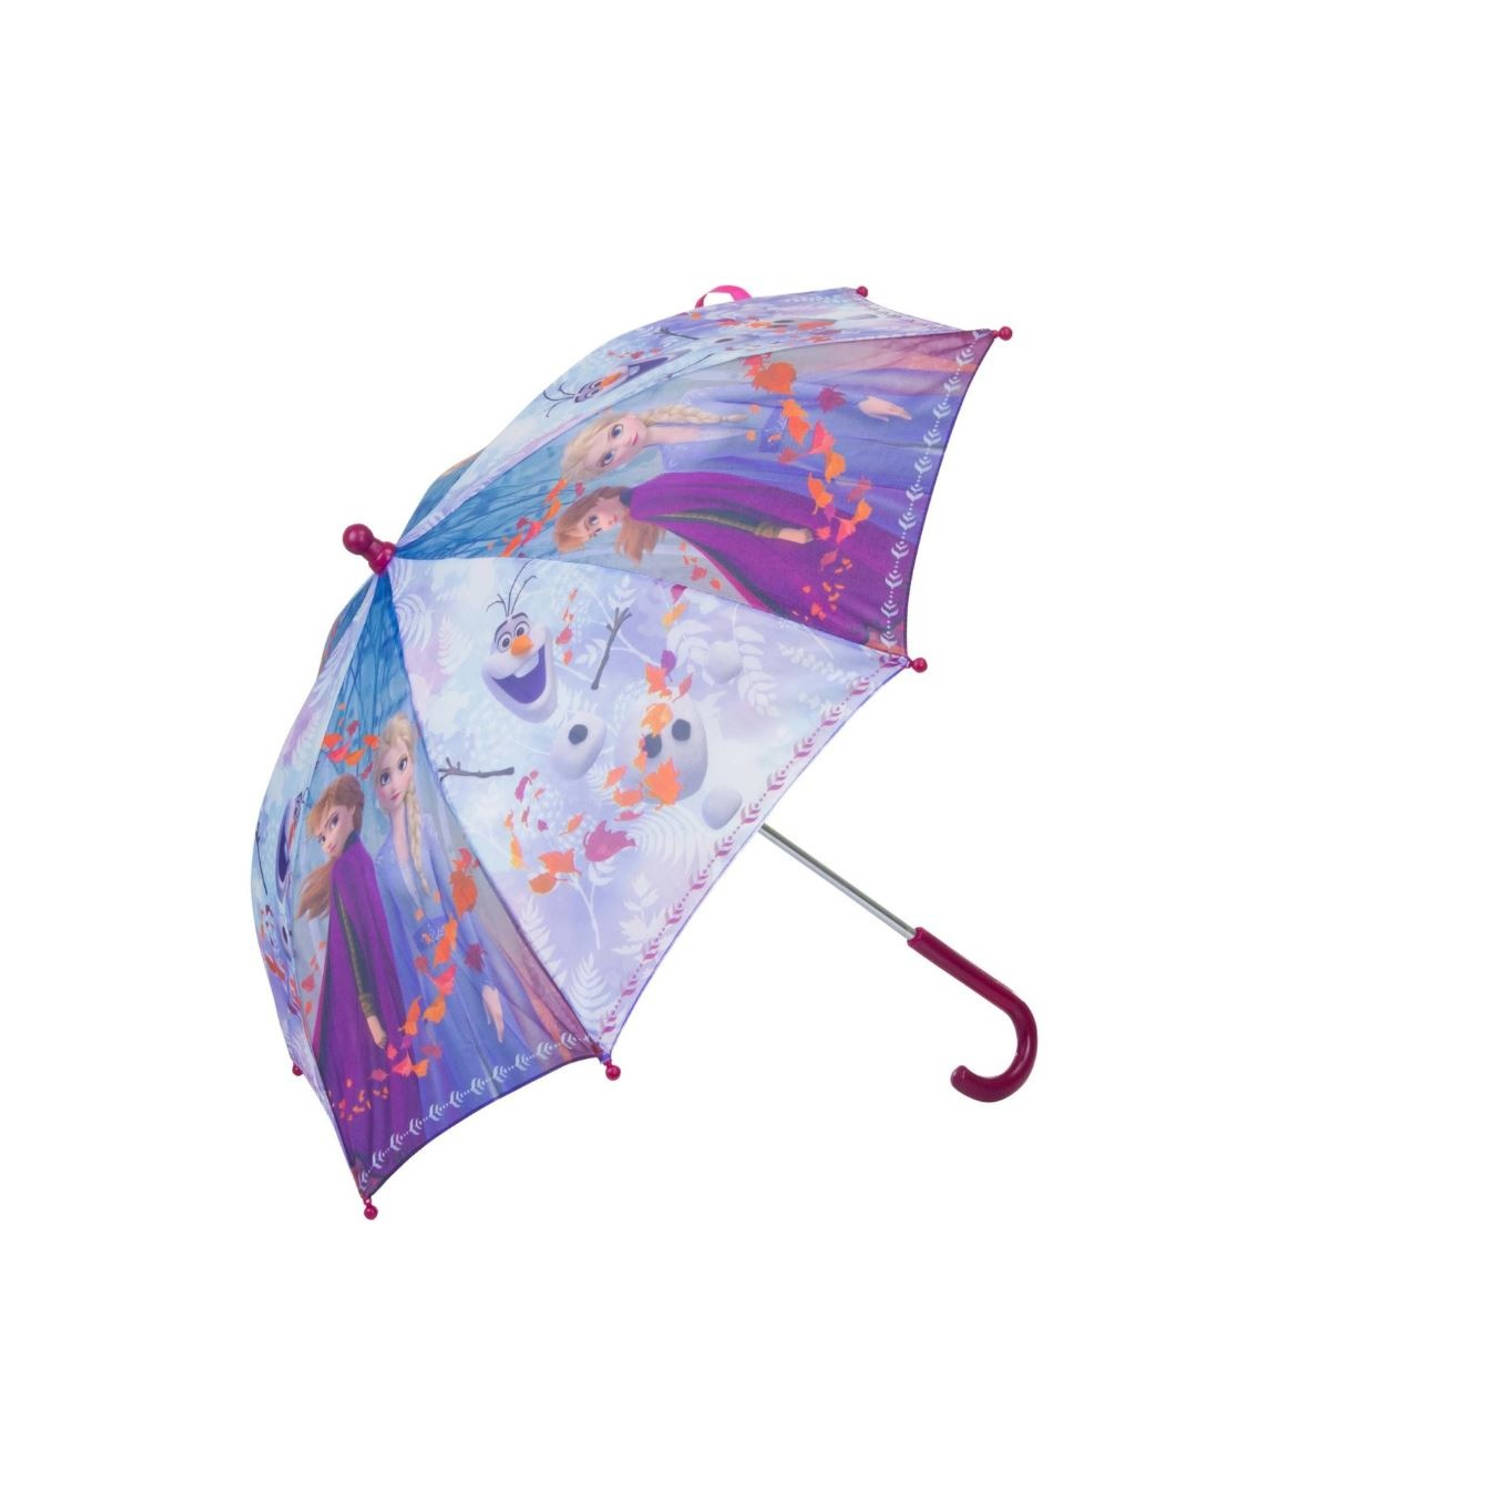 Gedwongen Port sieraden Disney Frozen paraplu met diameter van 65 cm Kinder paraplu - Paraplu -  Disney Frozen kinder paraplu paars | Blokker